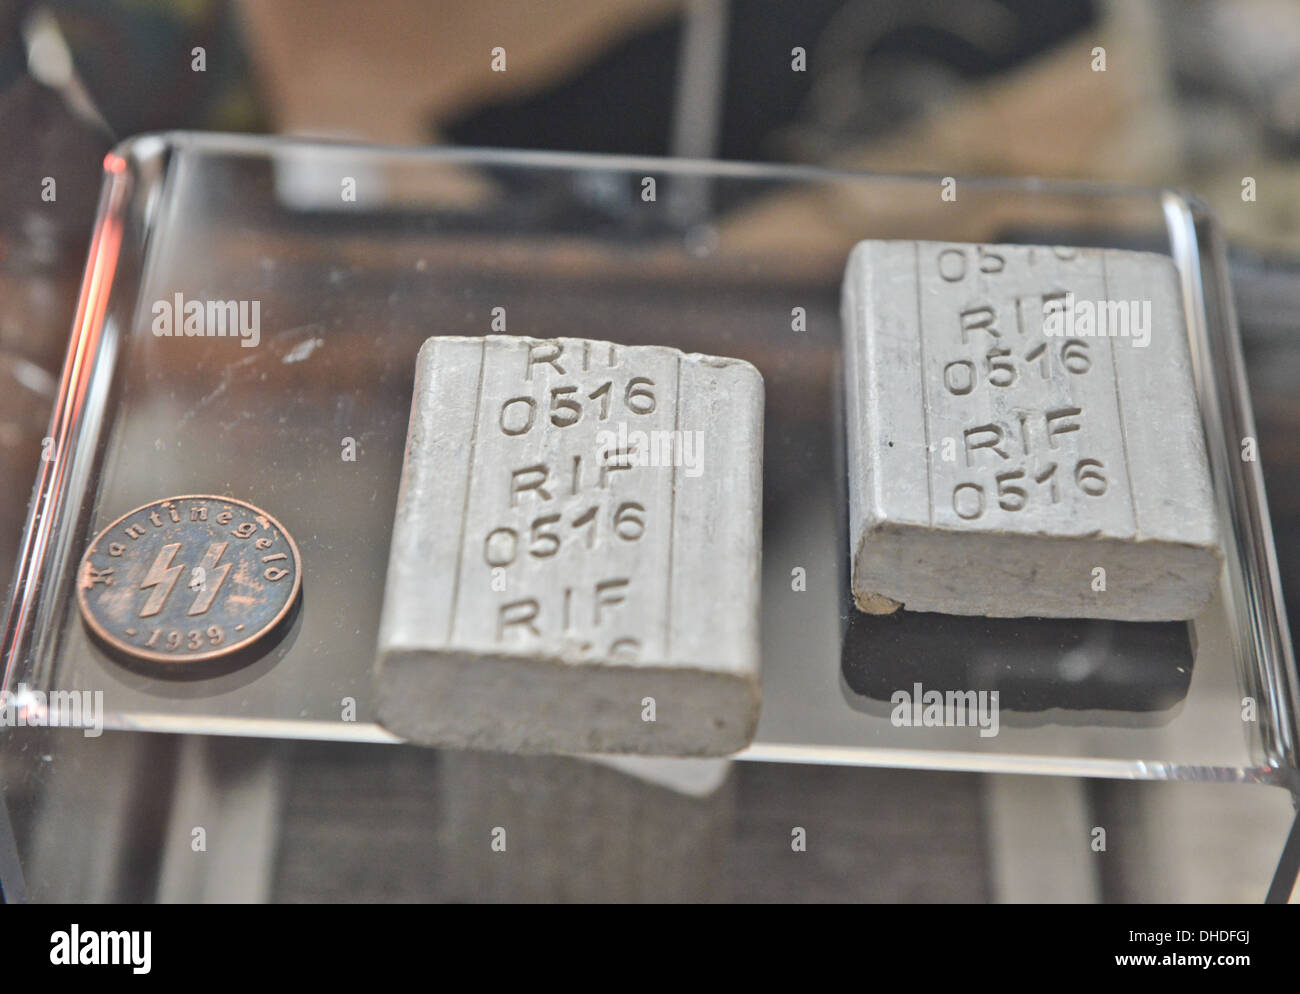 Original 'grasa humana ' jabón utilizado en el holocausto Nazi, los campos  de exterminio nazis, junto con una moneda se encuentra ahora en exhibición  como parte de la 'Muder Fotografía de stock -